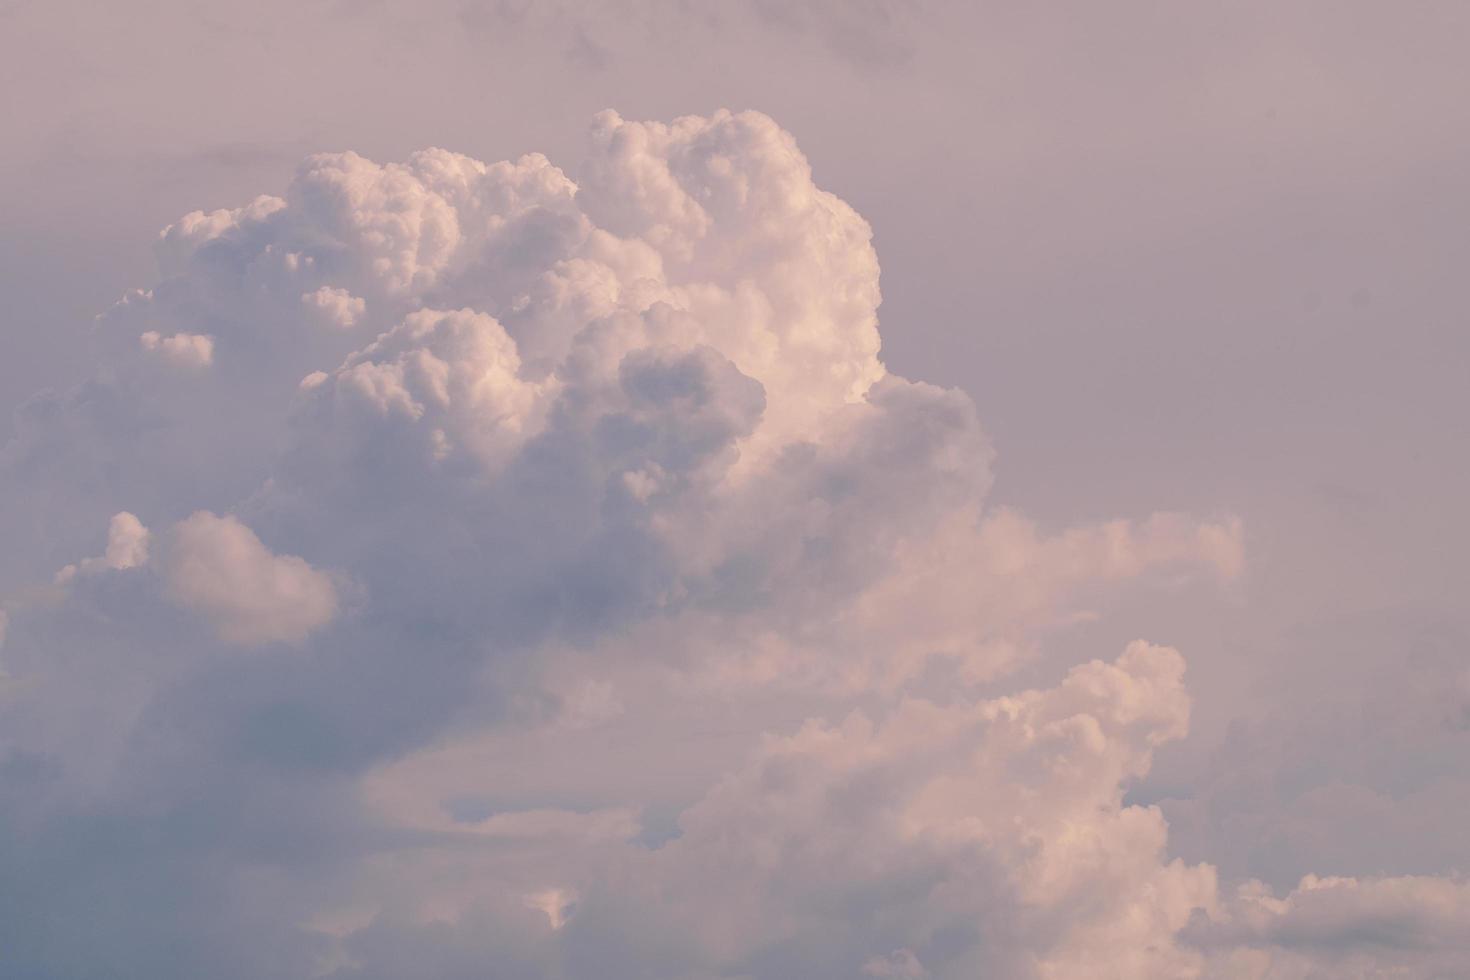  Himmel Hintergrundbild 1470x980. Schöne Weiße Flauschige Wolken Himmel Hintergrund Abstrakt Saison Und Wetter. 5727194 Stock Photo Bei Vecteezy